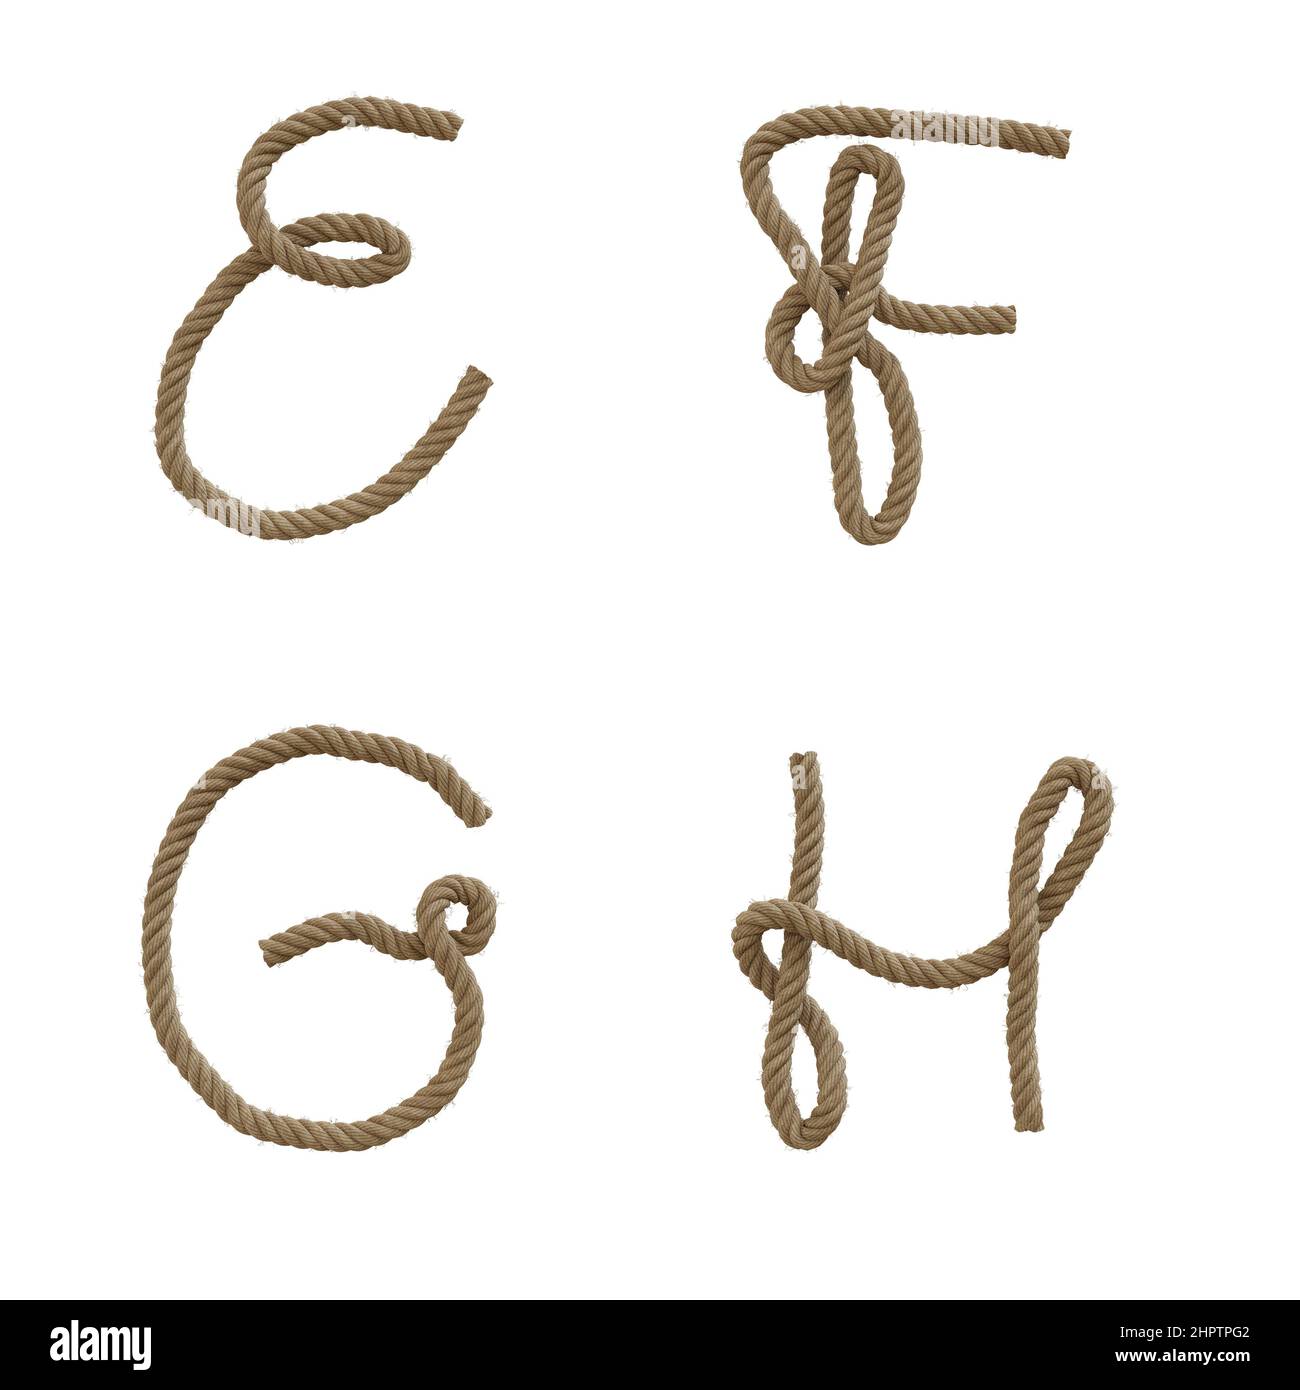 3D Darstellung von Hanfseil-Großbuchstaben Alphabet - Buchstaben E-H Stockfoto